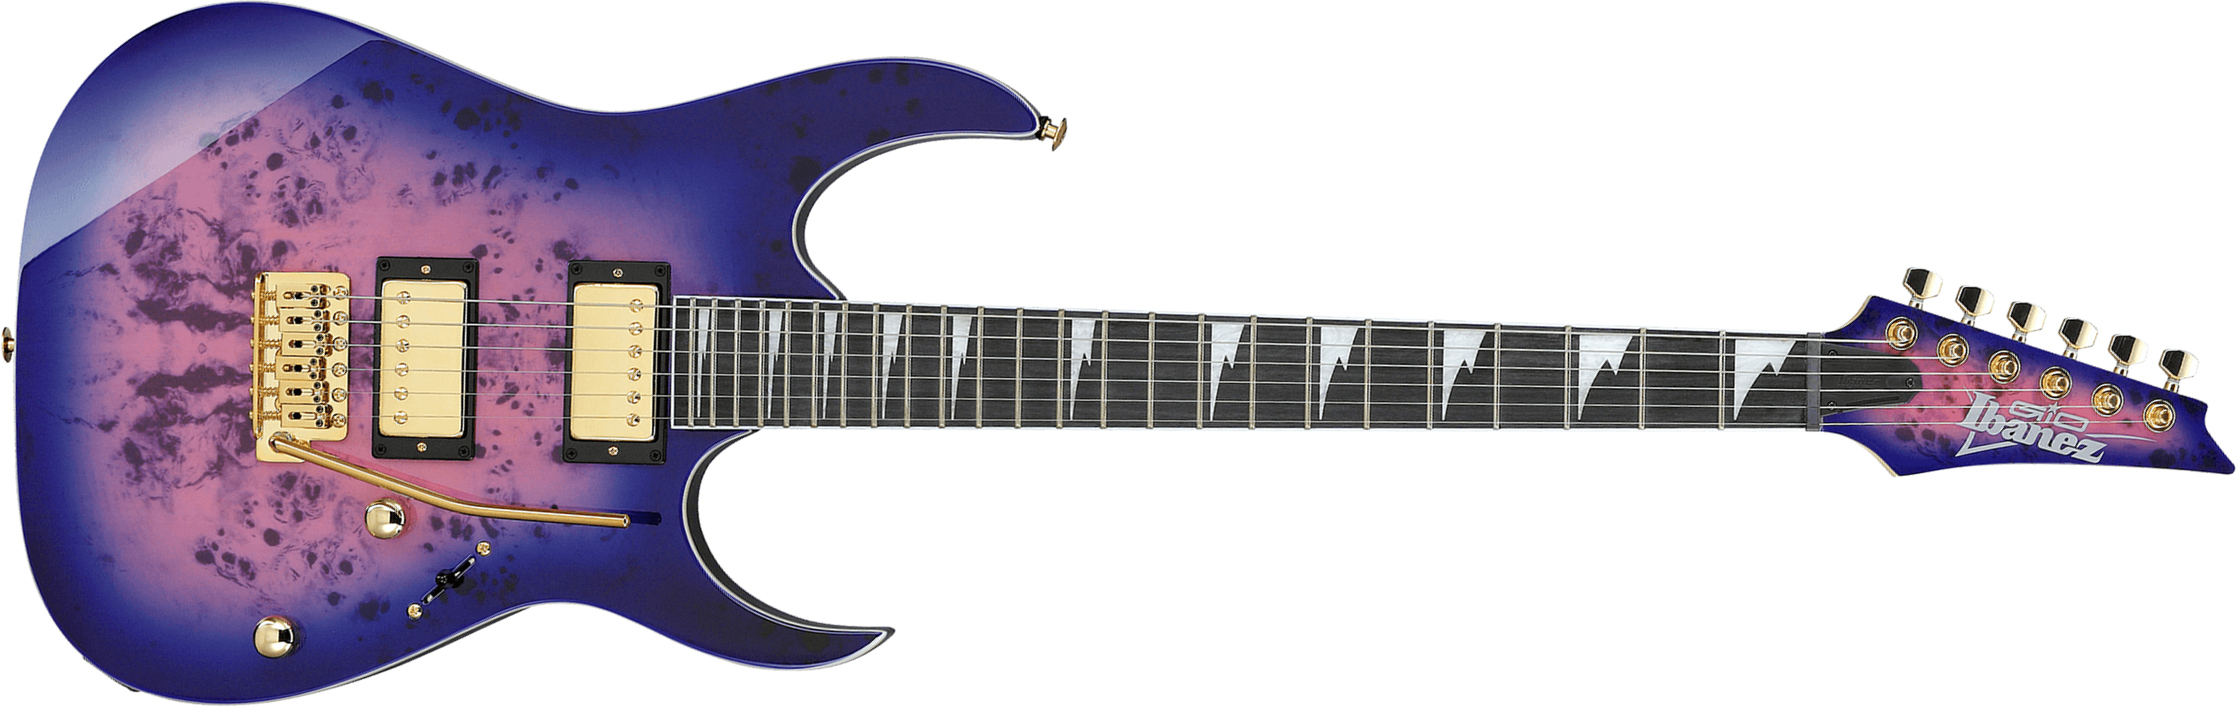 Ibanez Grg220pa Rlb Gio 2h Trem Pur - Royal Purple Burst - Guitare Électrique Forme Str - Main picture